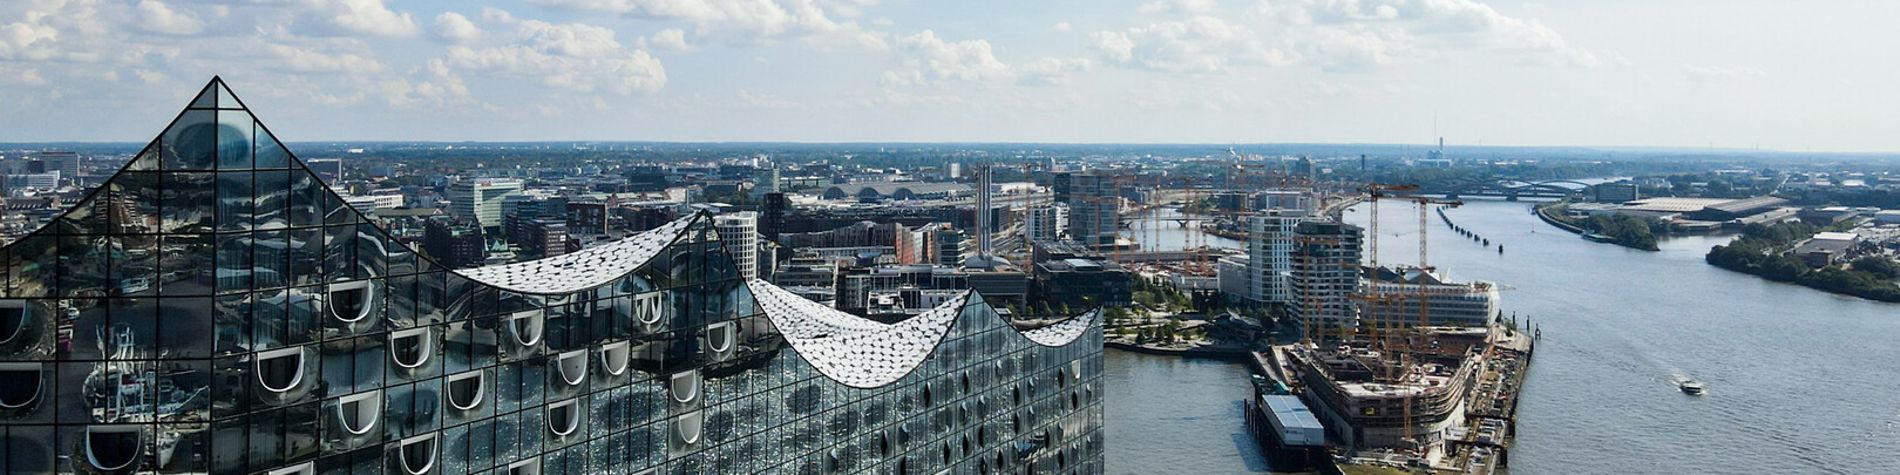 Die Hamburger Elbphilharmonie und weitere Gebäude sind aus der Luft fotografiert.